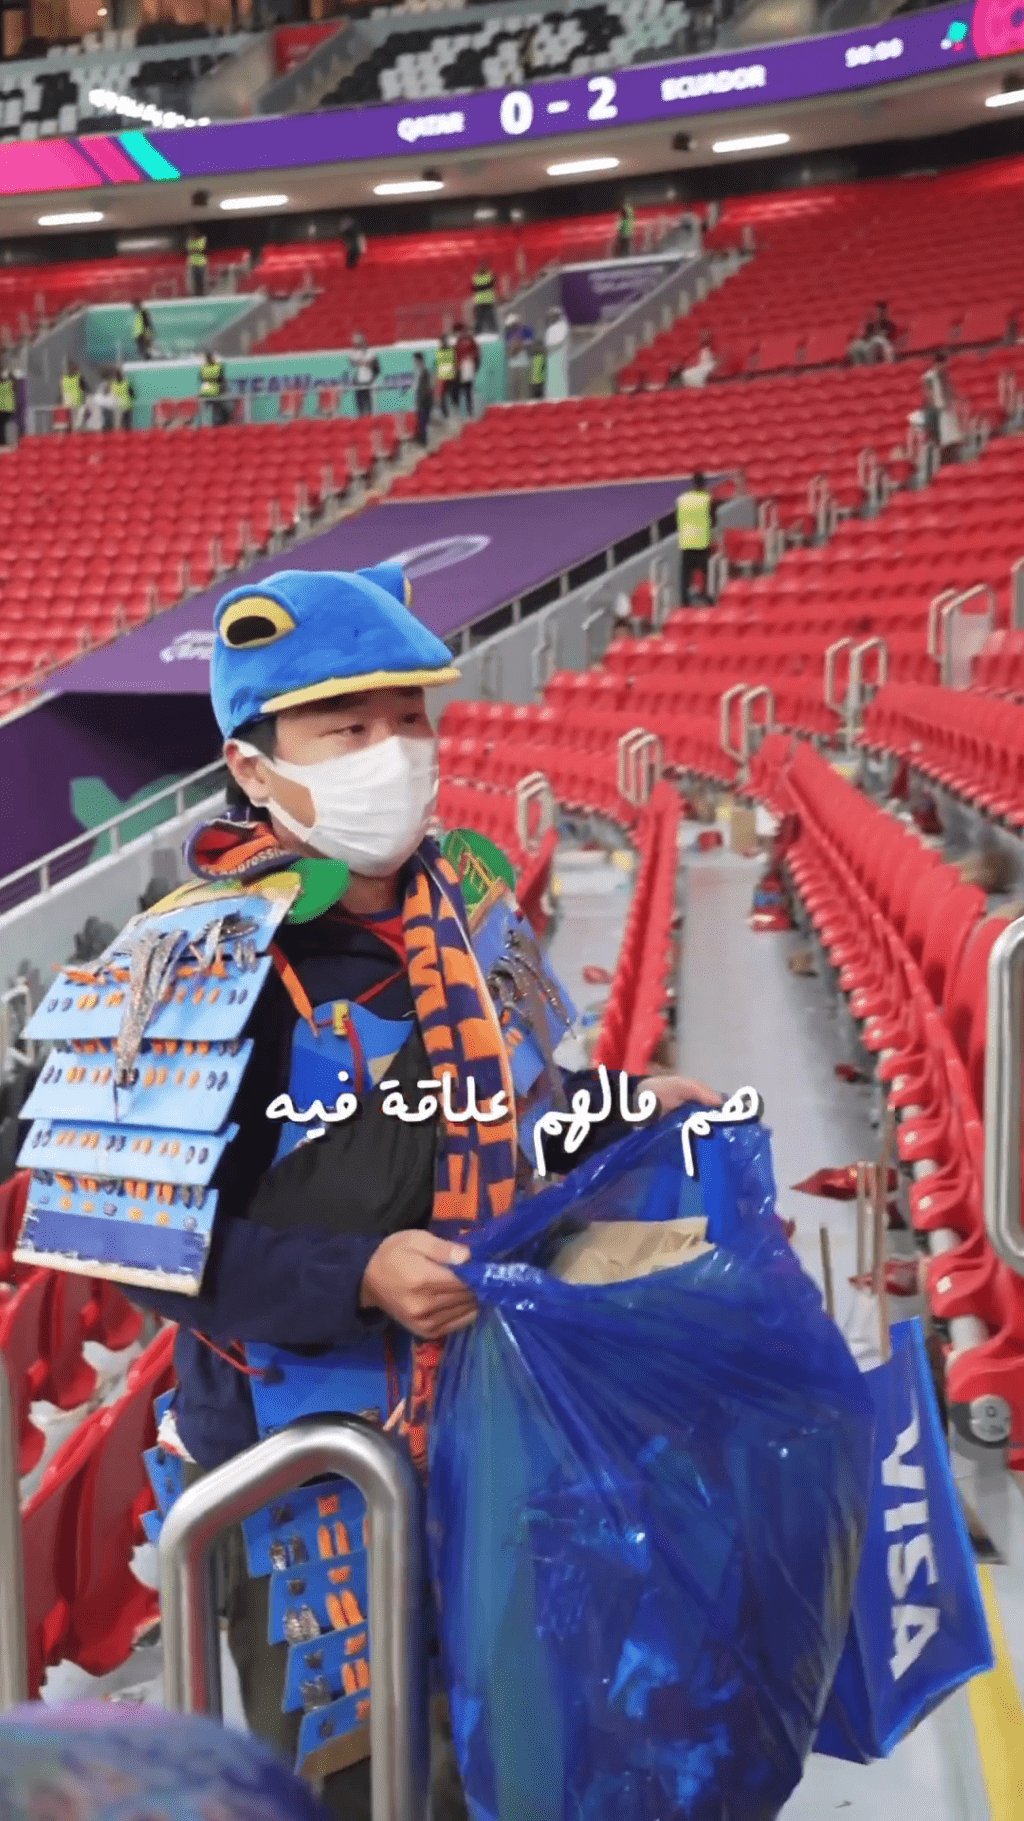 中東網紅對日本球迷主動清理垃圾的美德表示尊重。網圖